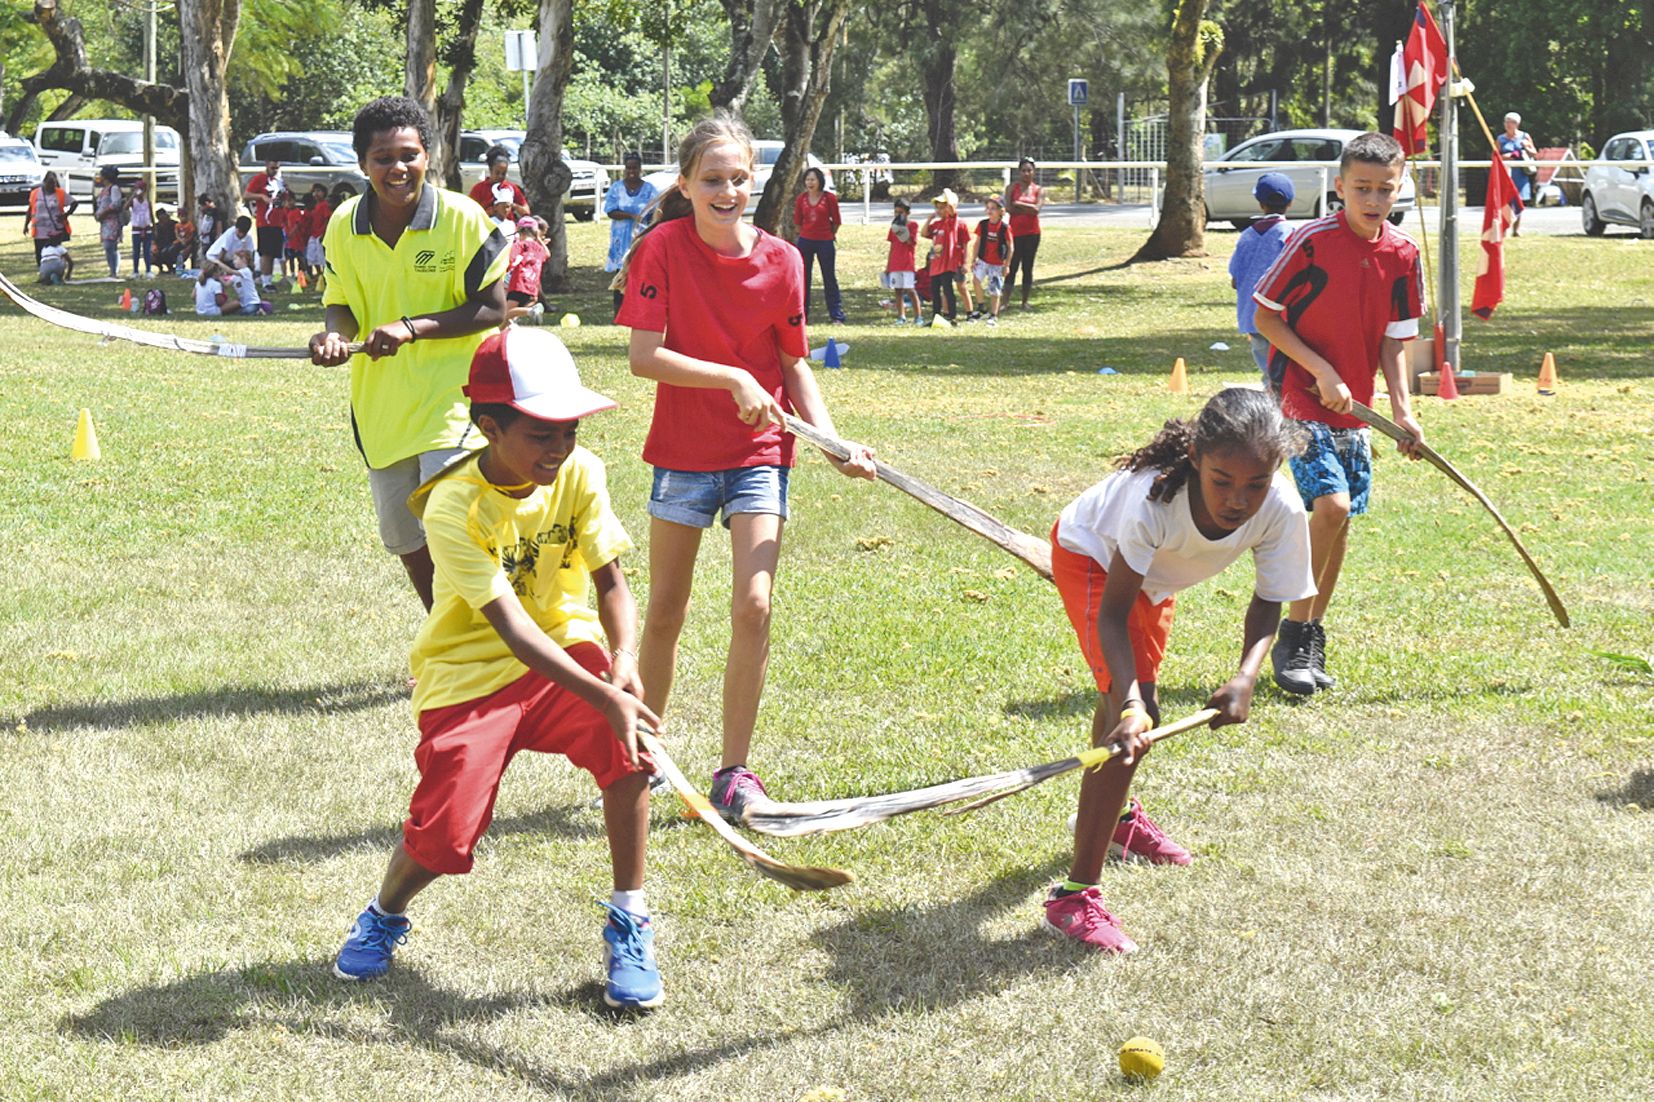 Le tournoi sportif réunissait les élèves de primaire autour de mini-jeux issus de différentes traditions. Ici, les écoles Renée-Fong et Gustave-Clain s’affrontent lors d’une partie de « El Kura », un jeu algérien qui ressemble au hockey.